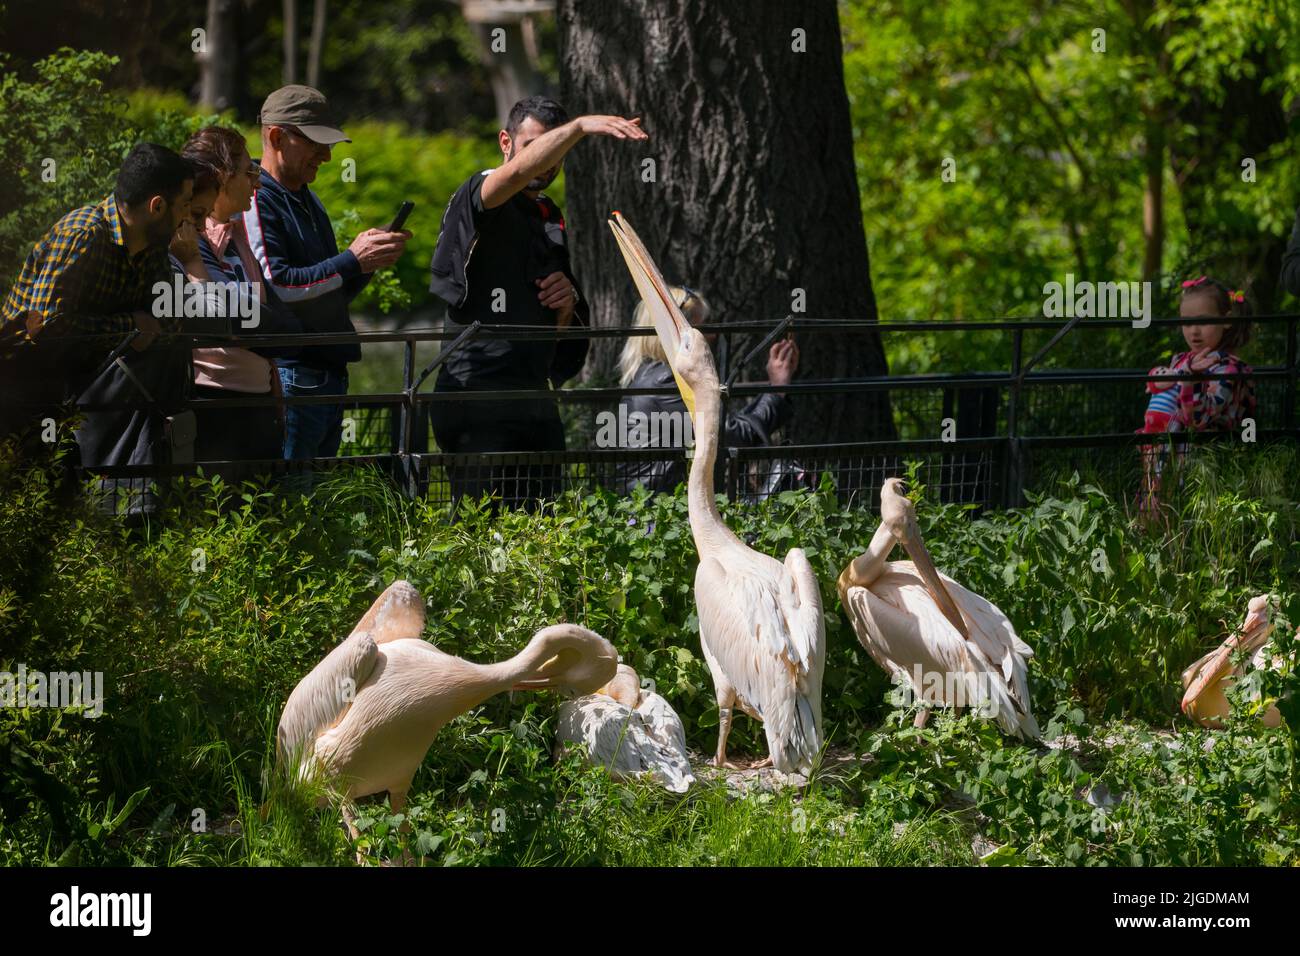 Varsovie, Pologne, les gens observent les Pélicains blancs de l'est (Pelecanus onocrotalus) à l'enclos des oiseaux dans le jardin zoologique de Varsovie. Banque D'Images